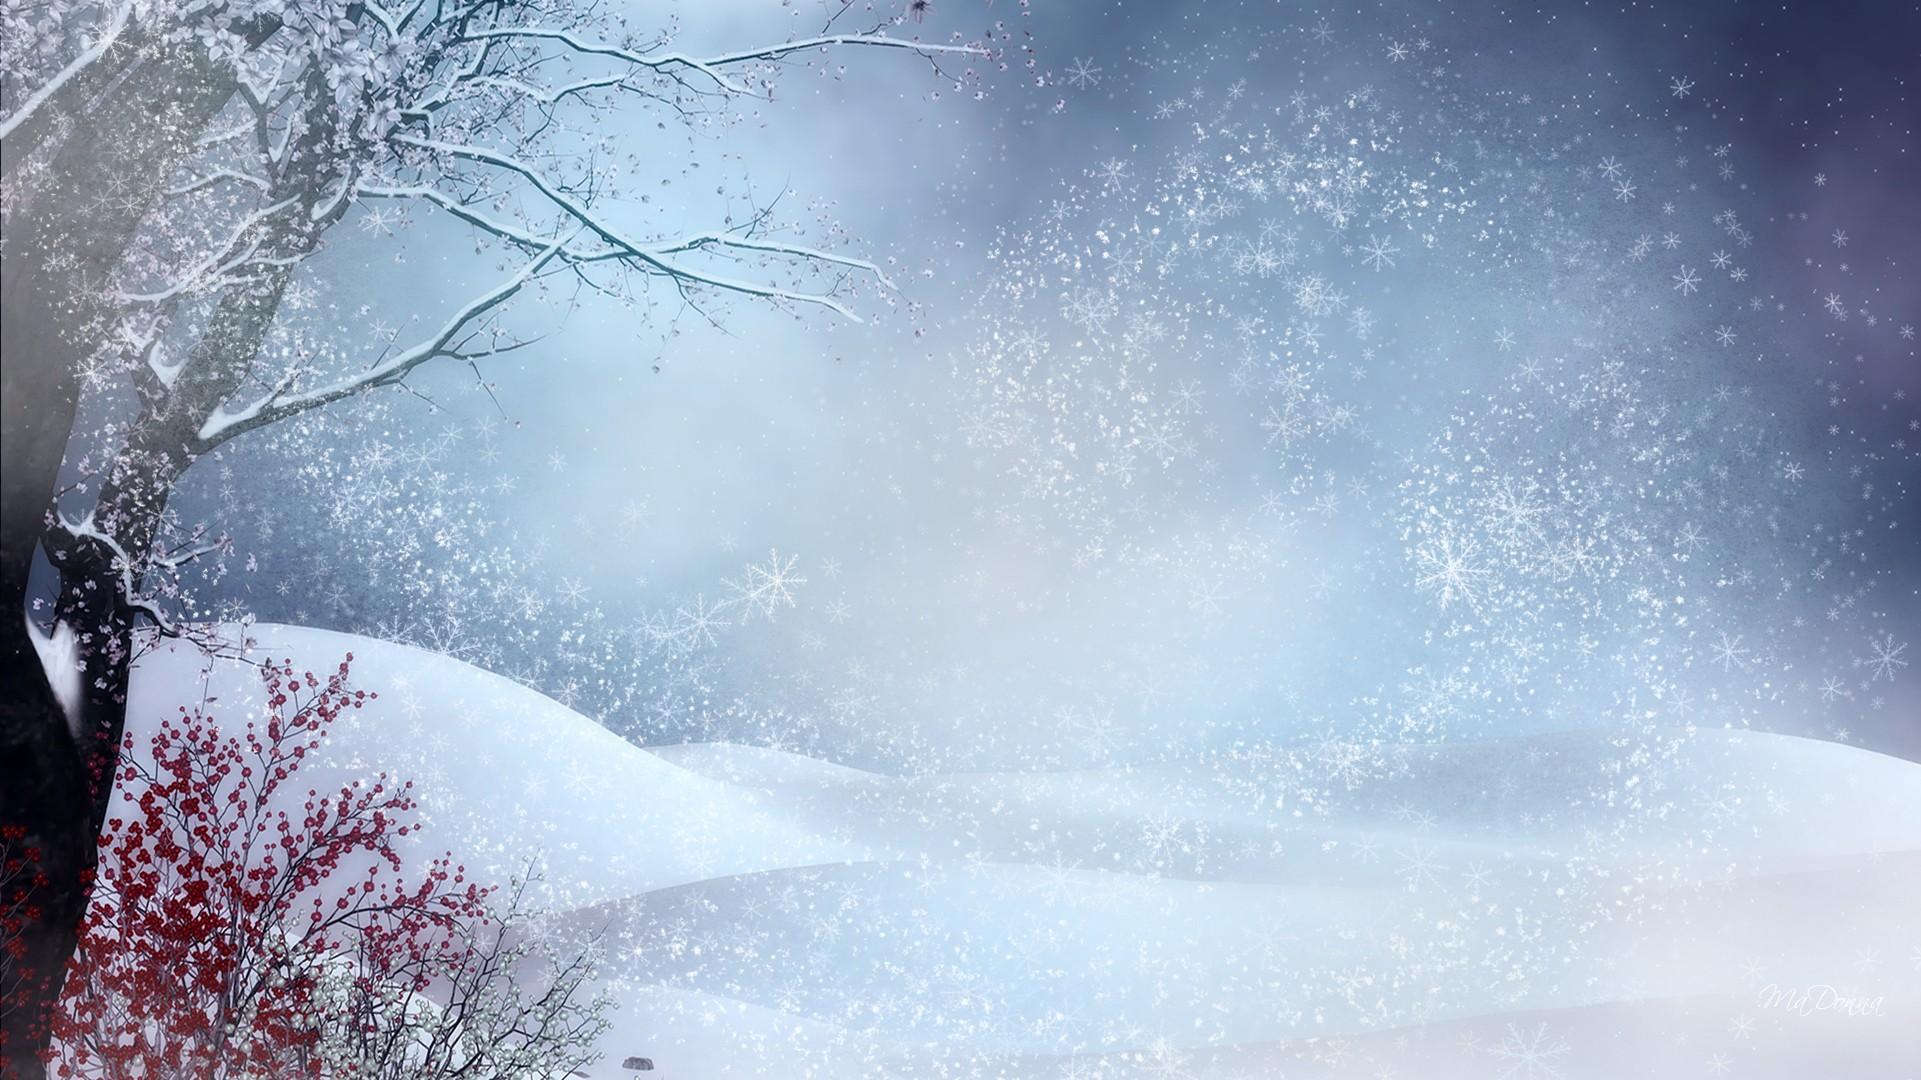 Winter Snow Wallpaper 21 Background. Wallruru